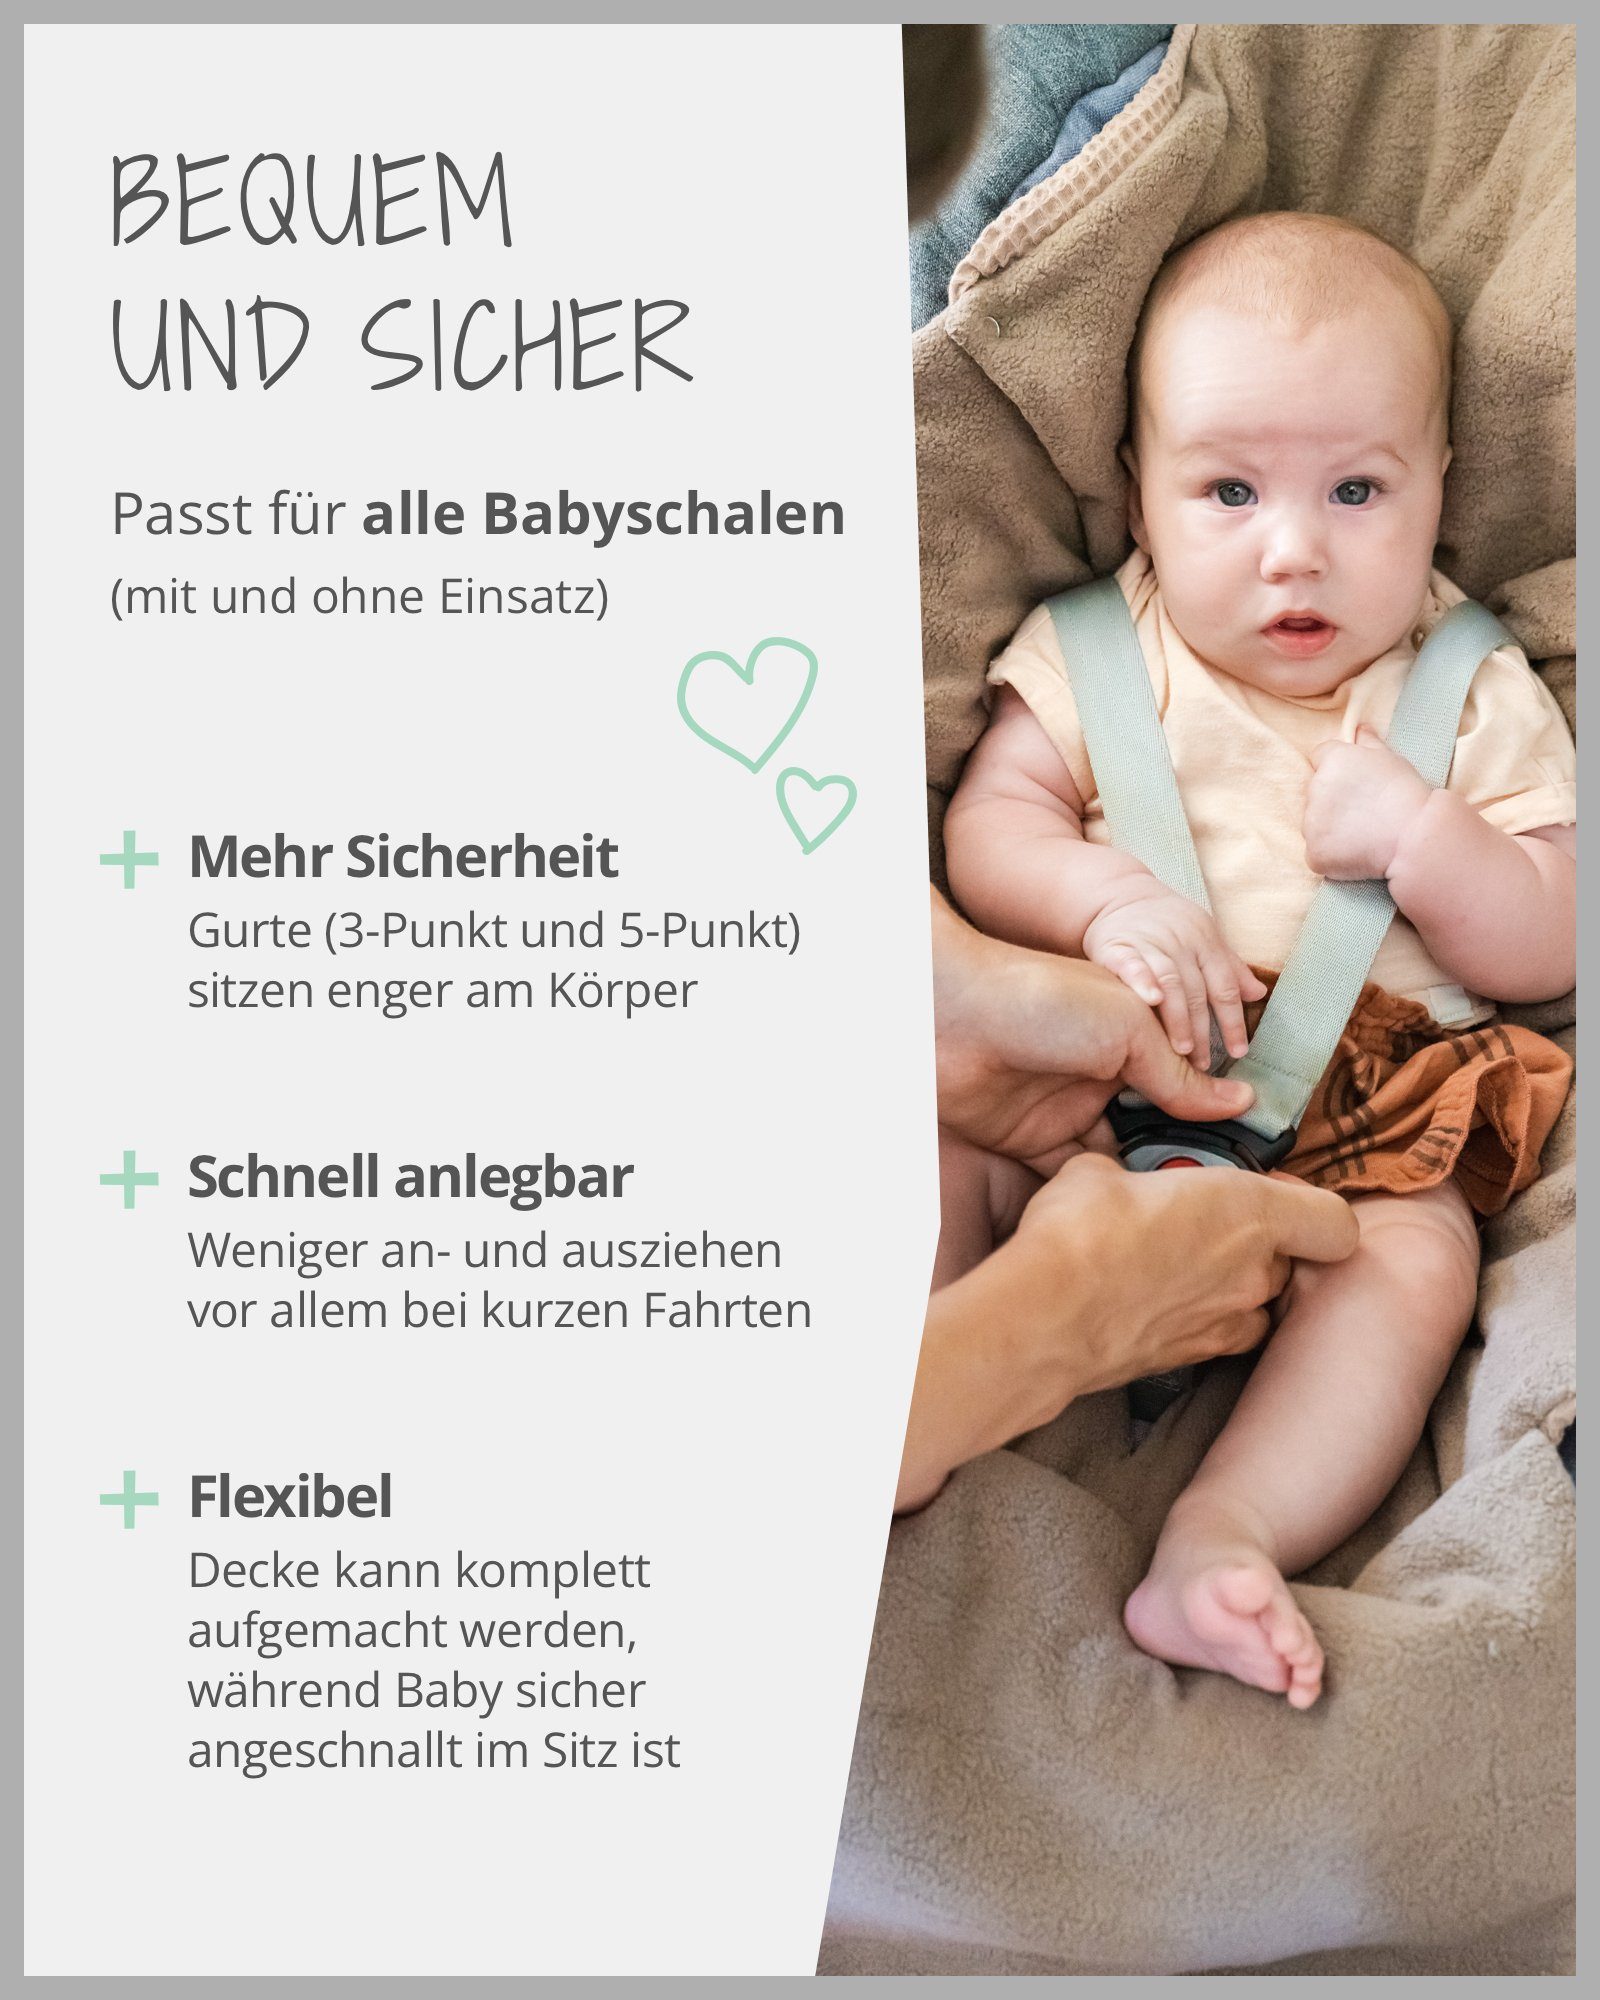 Einschlagdecke Für die Babyschale Blau Grün, Optimal für EU Design: Made Floral Frühling, Winter Autositz, und Herbst, ®, - TOG-Wert - in 2,5, ULLENBOOM